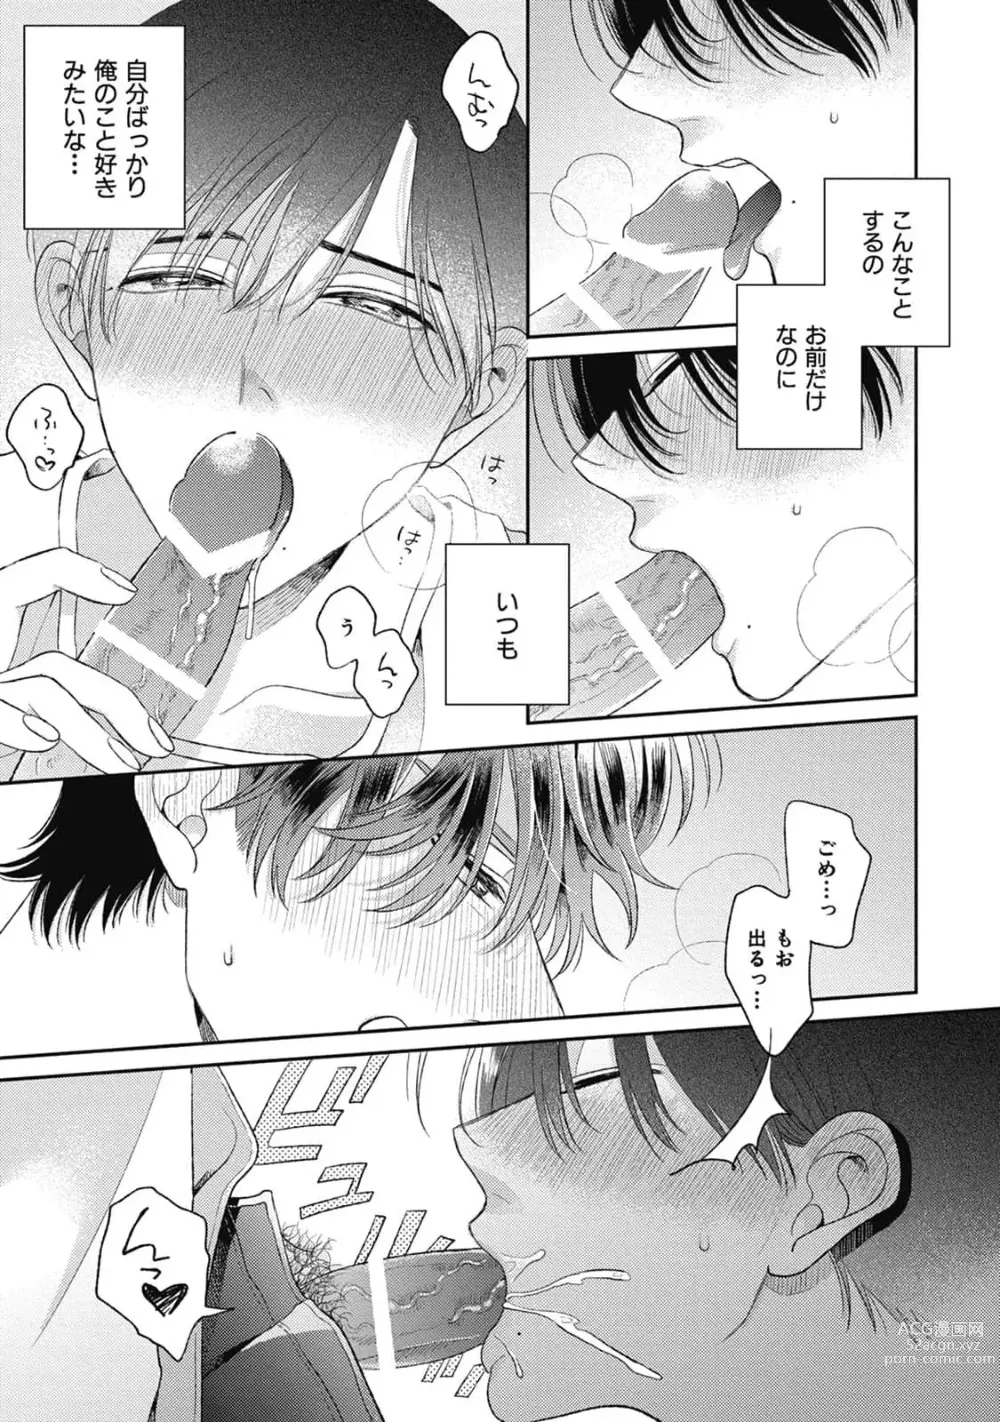 Page 15 of manga Bokura no Shuumatsu